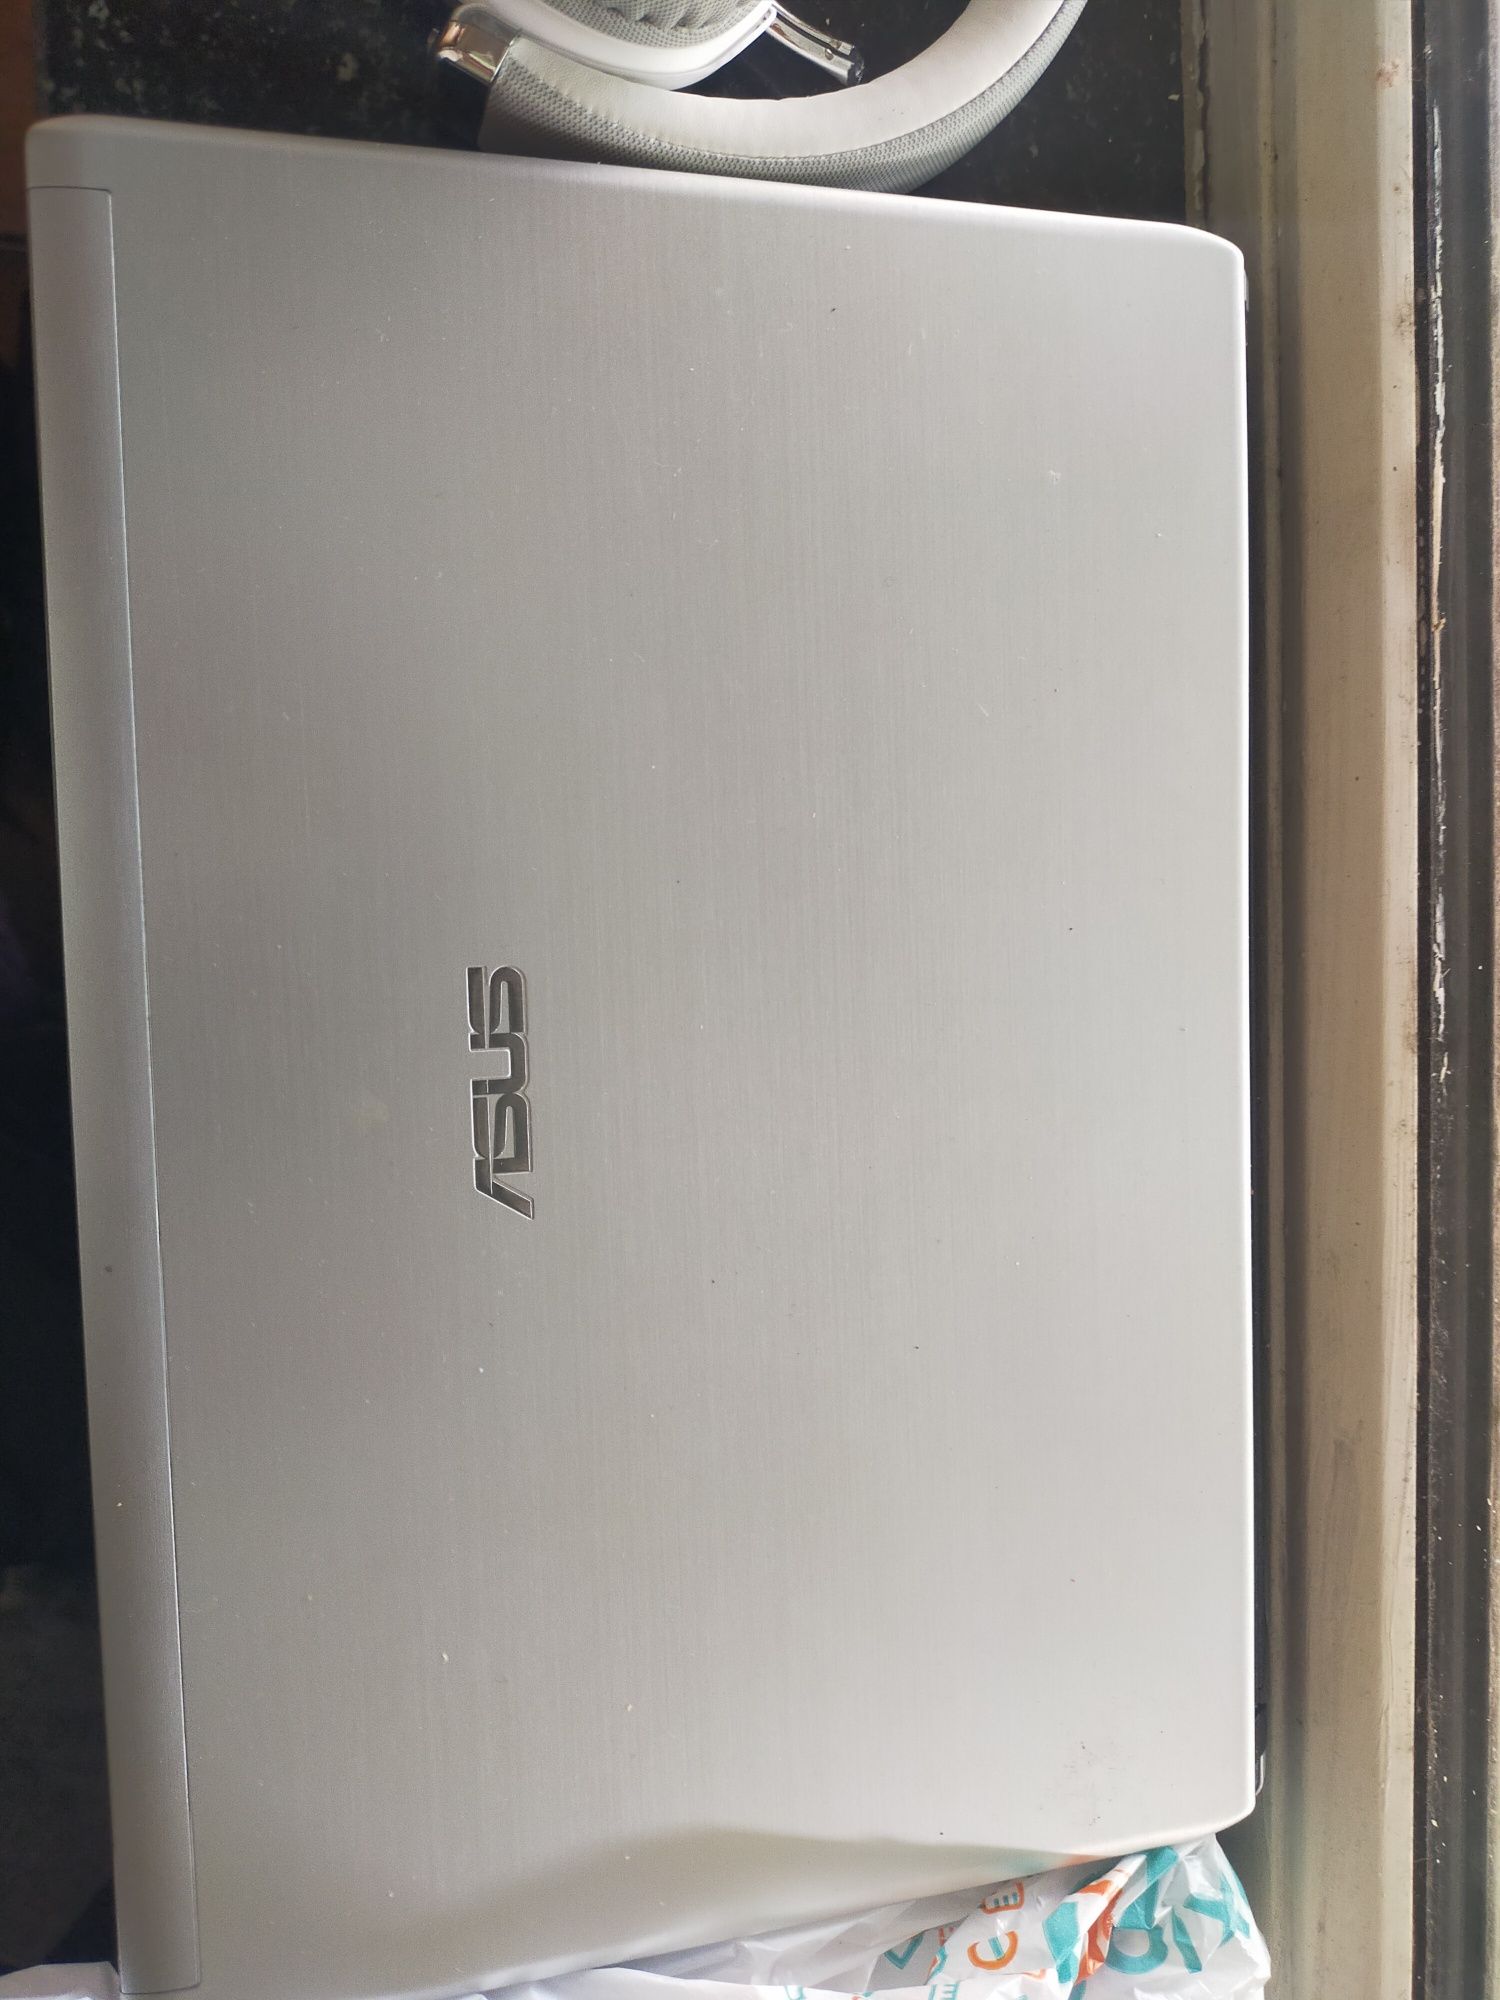 Ноутбук ASUS U31S Intel i3 Nvidia gt520